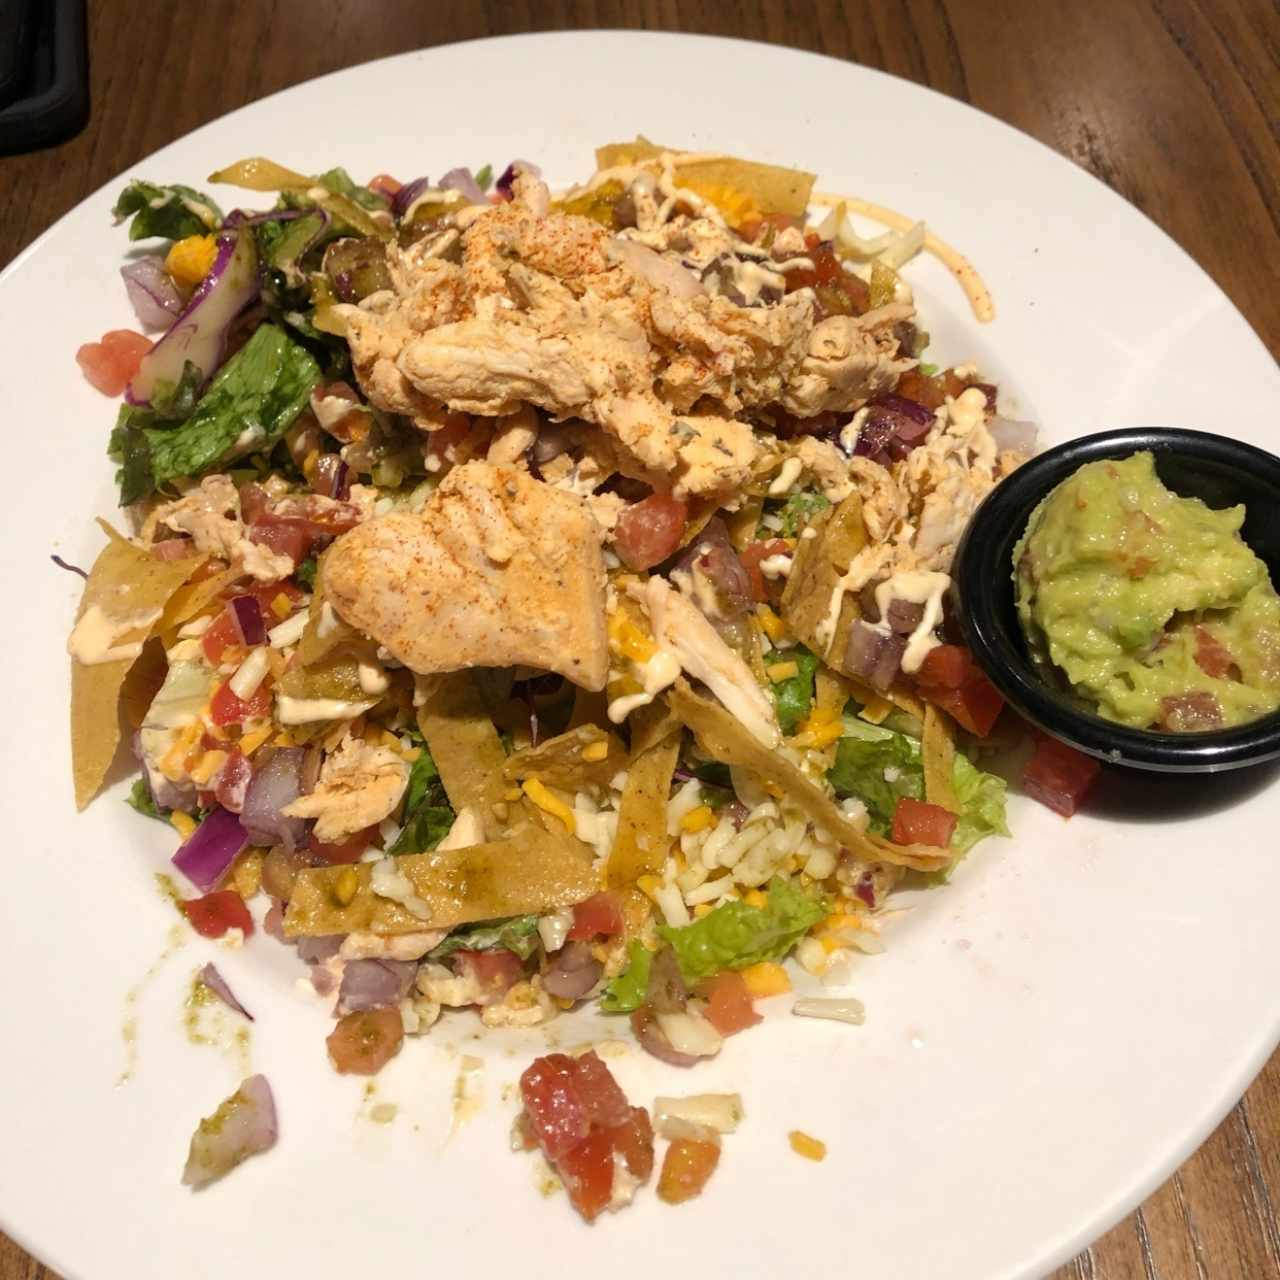 Chipotle Yucatan chicken salad